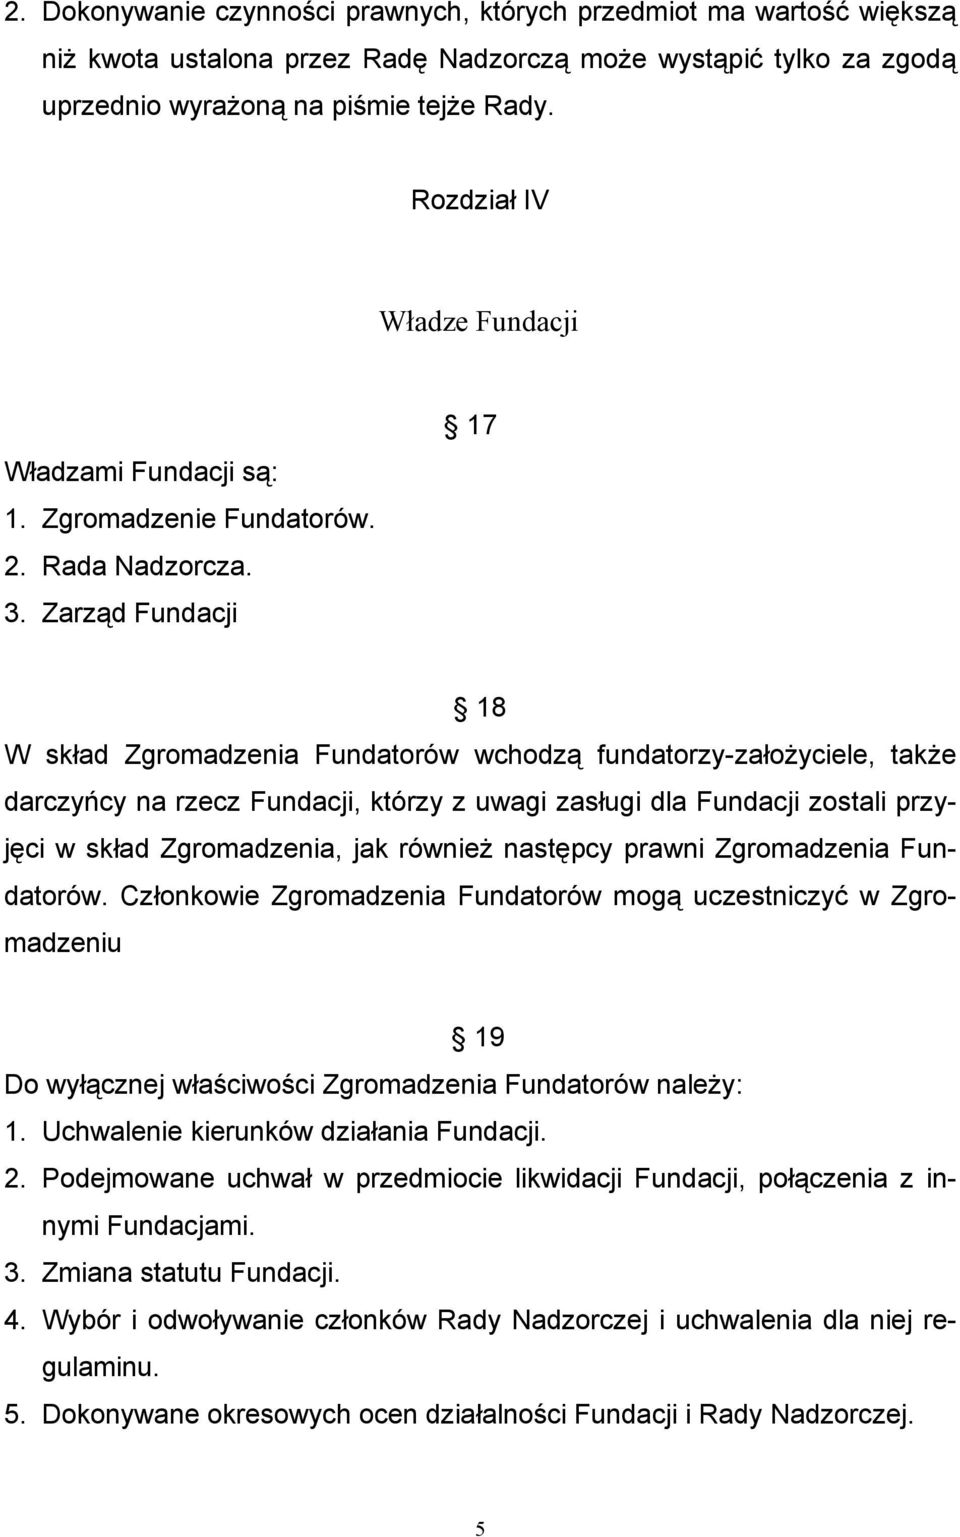 Zarząd Fundacji 17 18 W skład Zgromadzenia Fundatorów wchodzą fundatorzy-założyciele, także darczyńcy na rzecz Fundacji, którzy z uwagi zasługi dla Fundacji zostali przyjęci w skład Zgromadzenia, jak